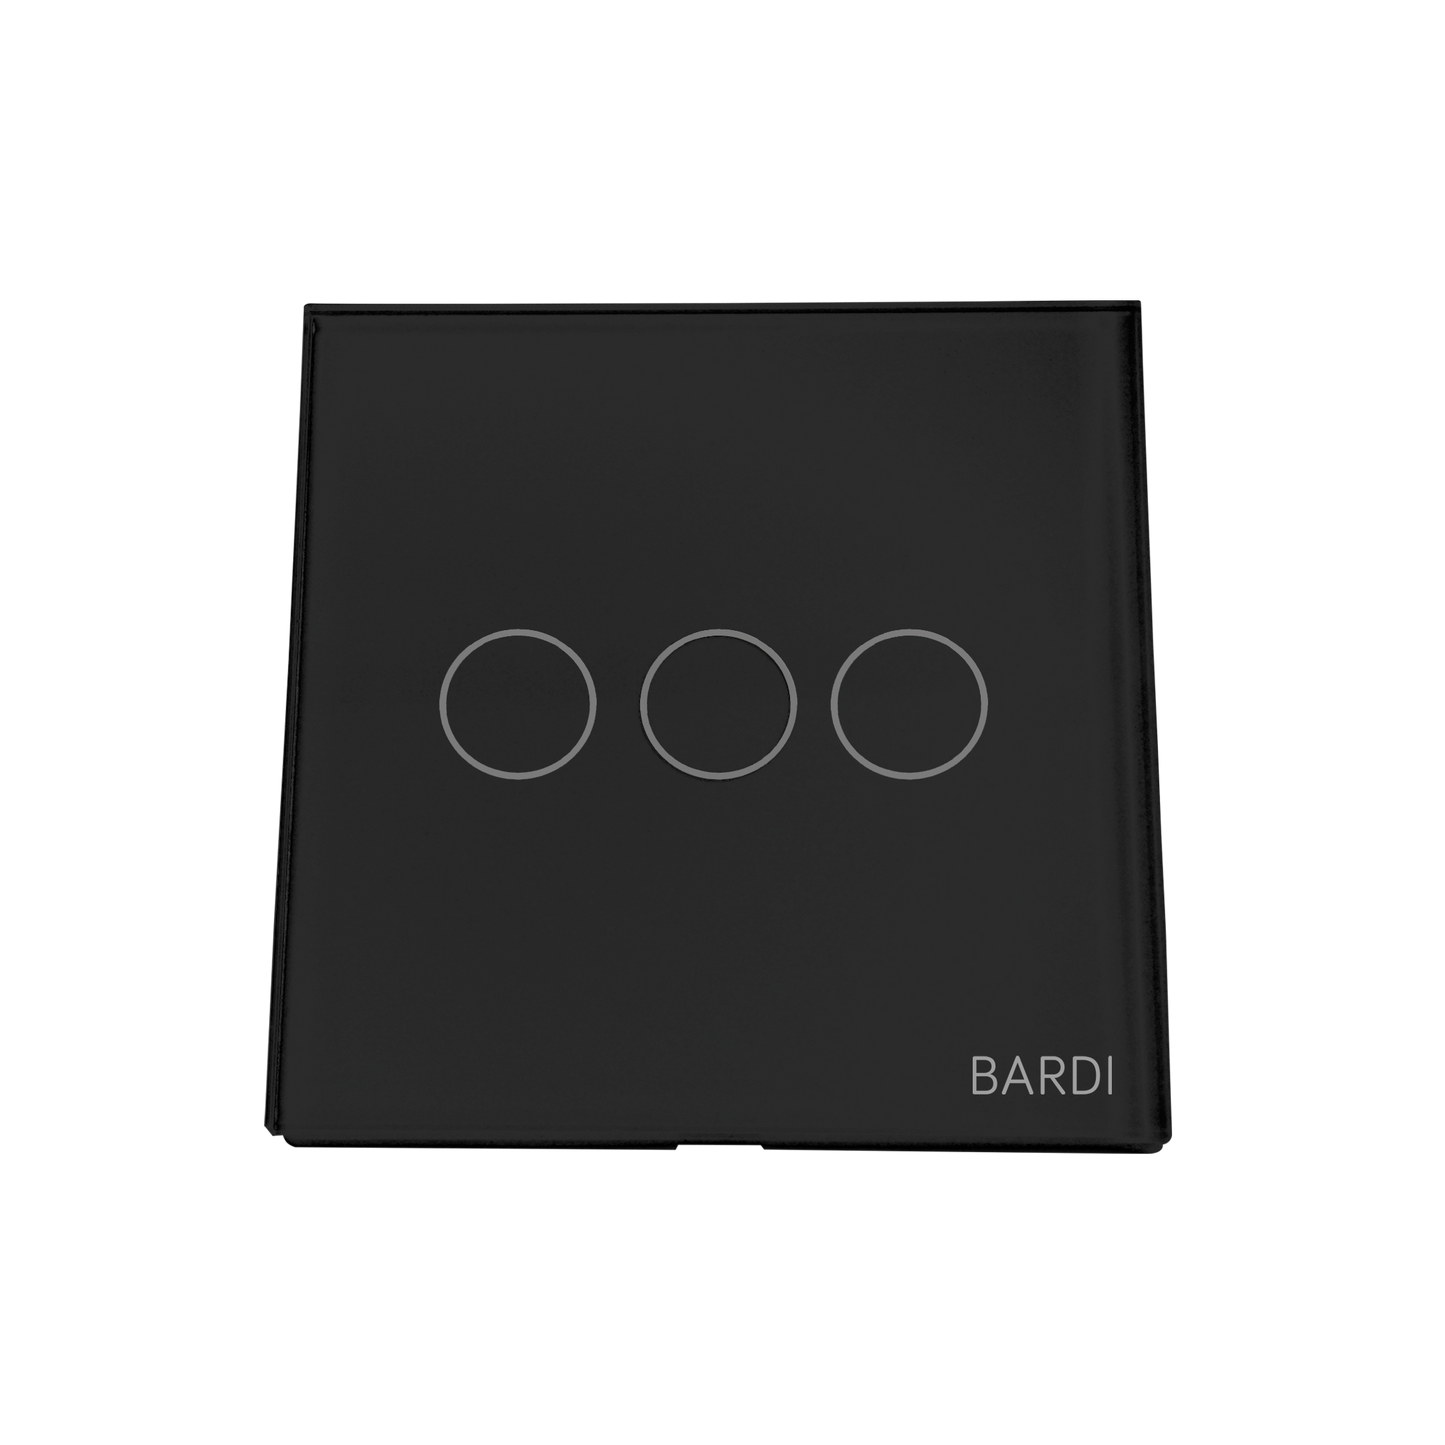 BARDI Smart Wall Switch EU 3 Gang - Black